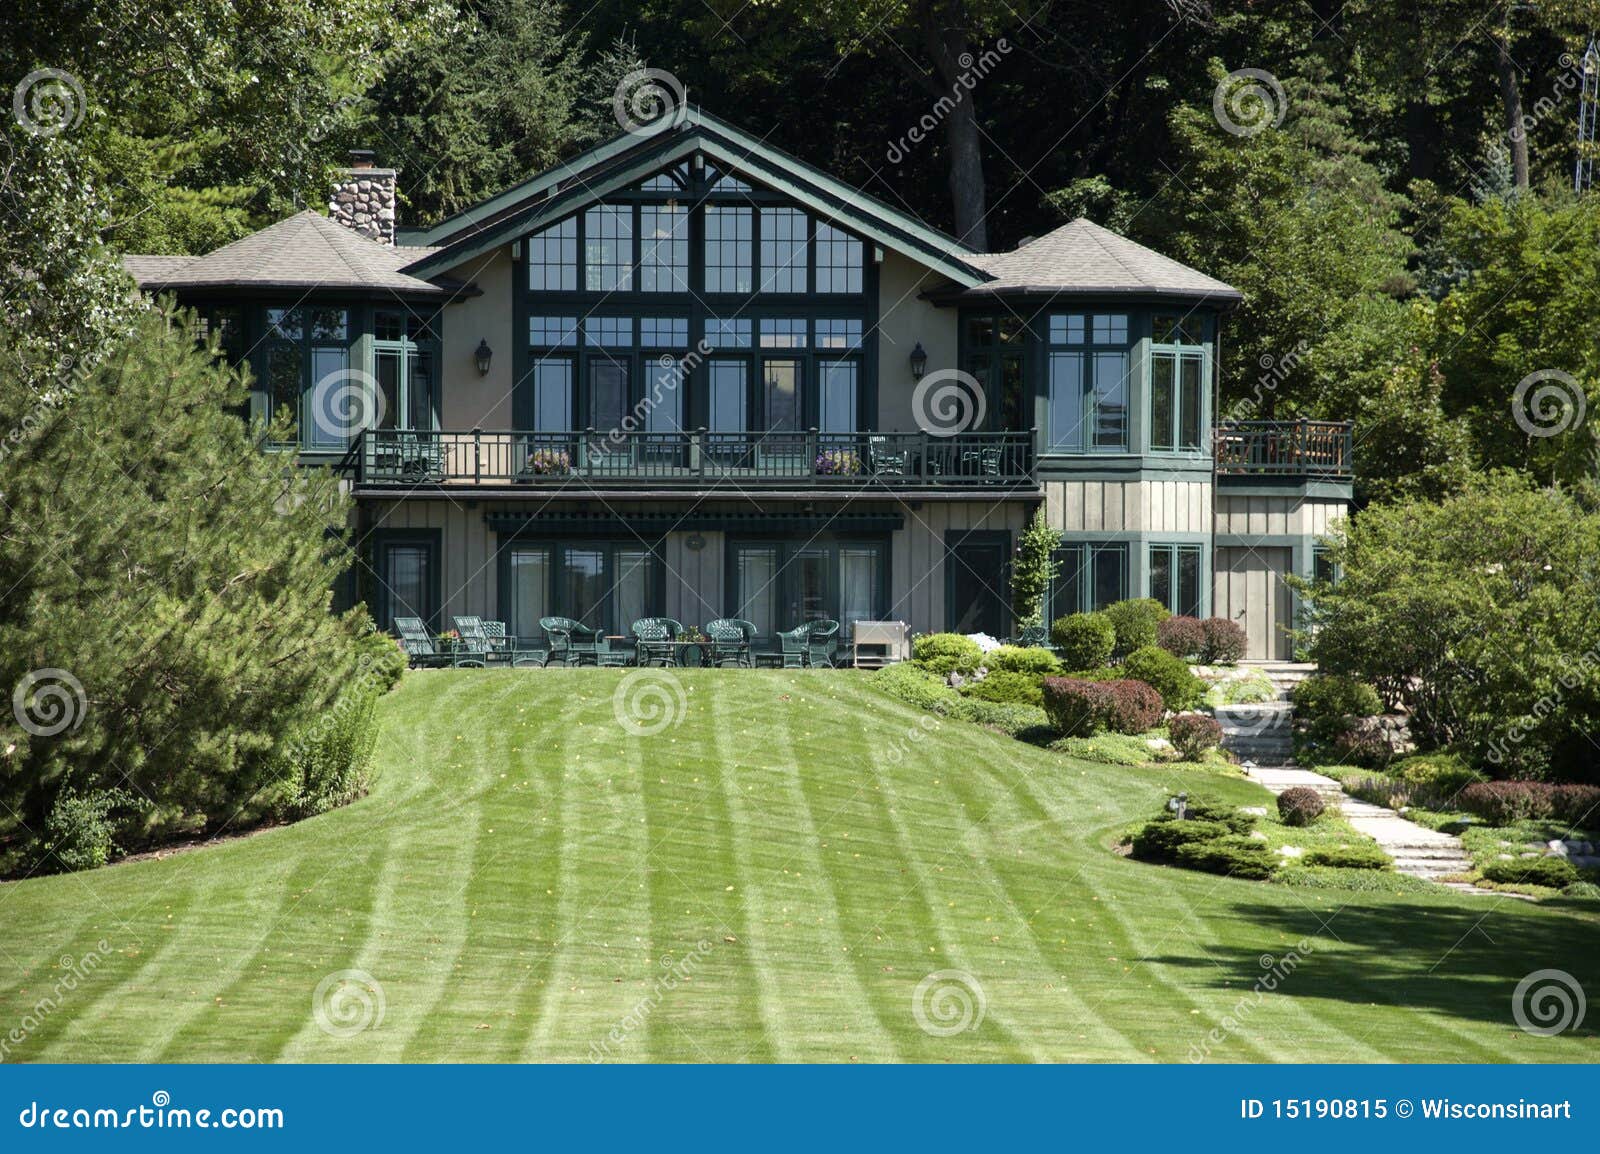 luxury mansion home estate, grass lawn